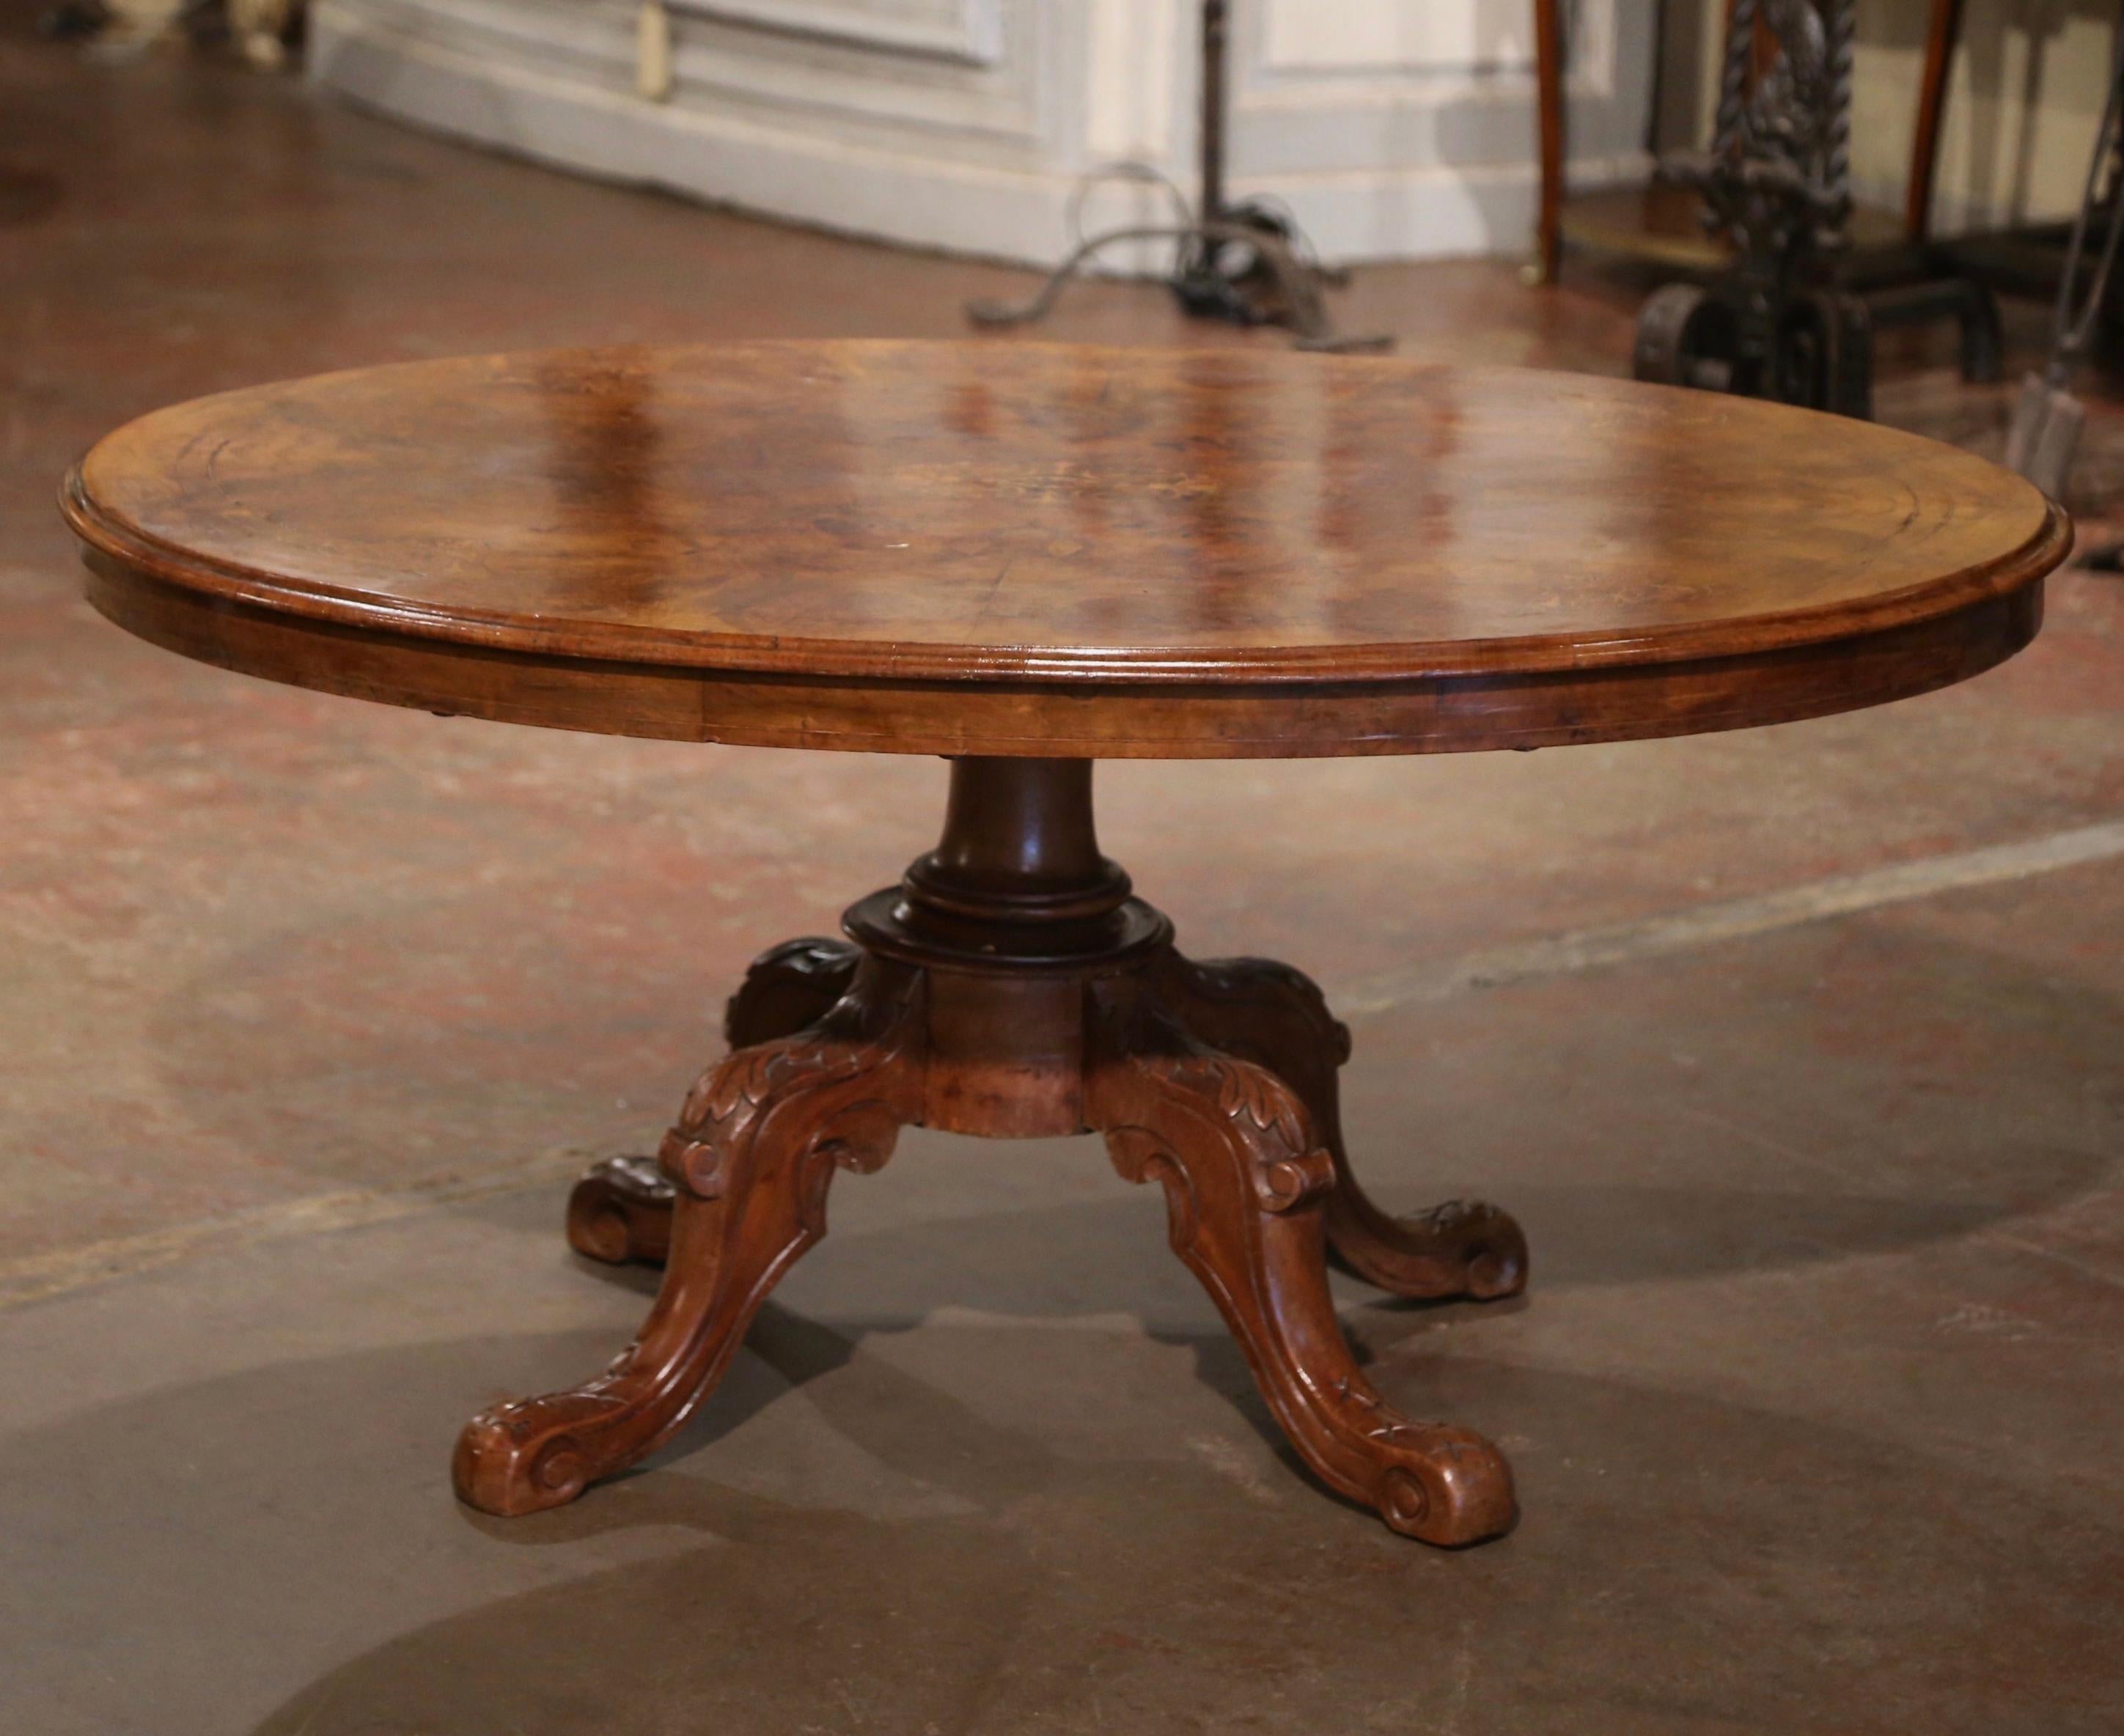 Dekorieren Sie ein DEN oder ein Wohnzimmer mit diesem eleganten antiken Cocktailtisch. Der große Tisch wurde um 1860 in England gefertigt und steht auf einem geschnitzten Nussbaumstamm, der vier geschwungene Beine trägt, die mit Akanthusblättern